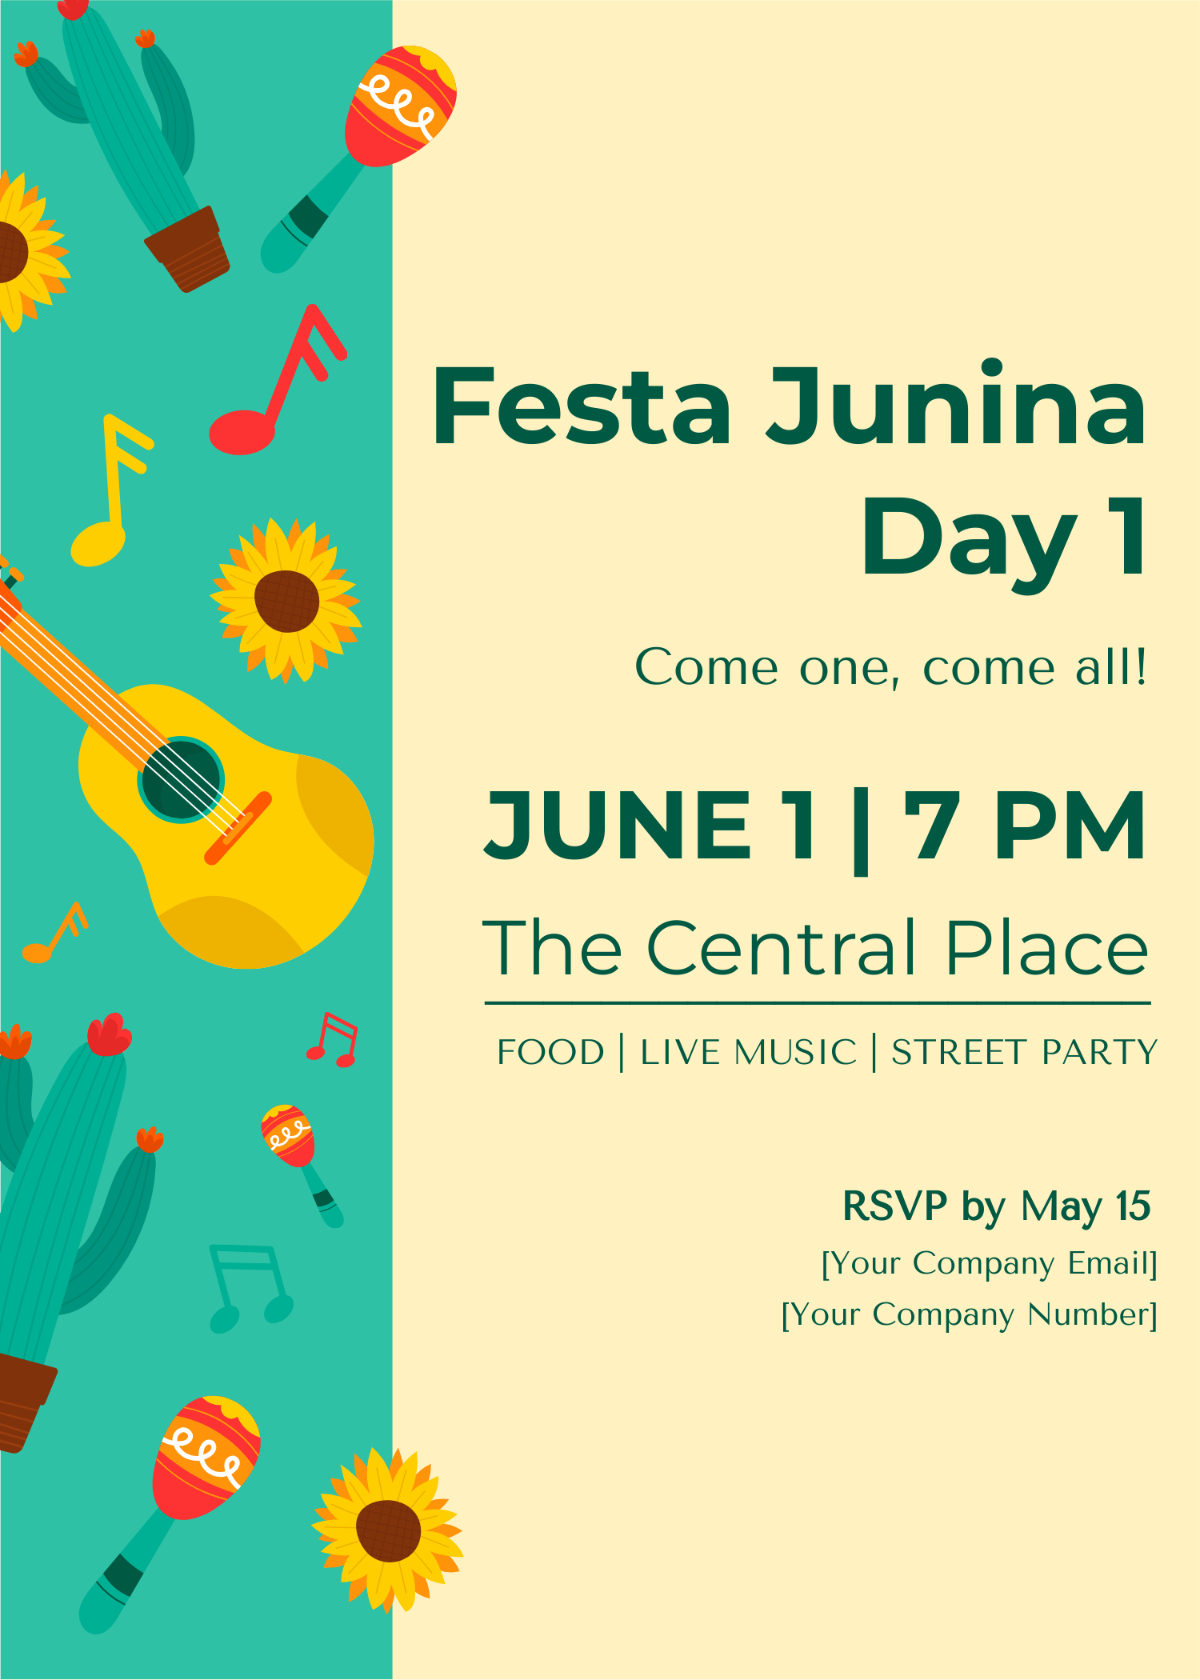 Festa Junina Poster Invitation Template